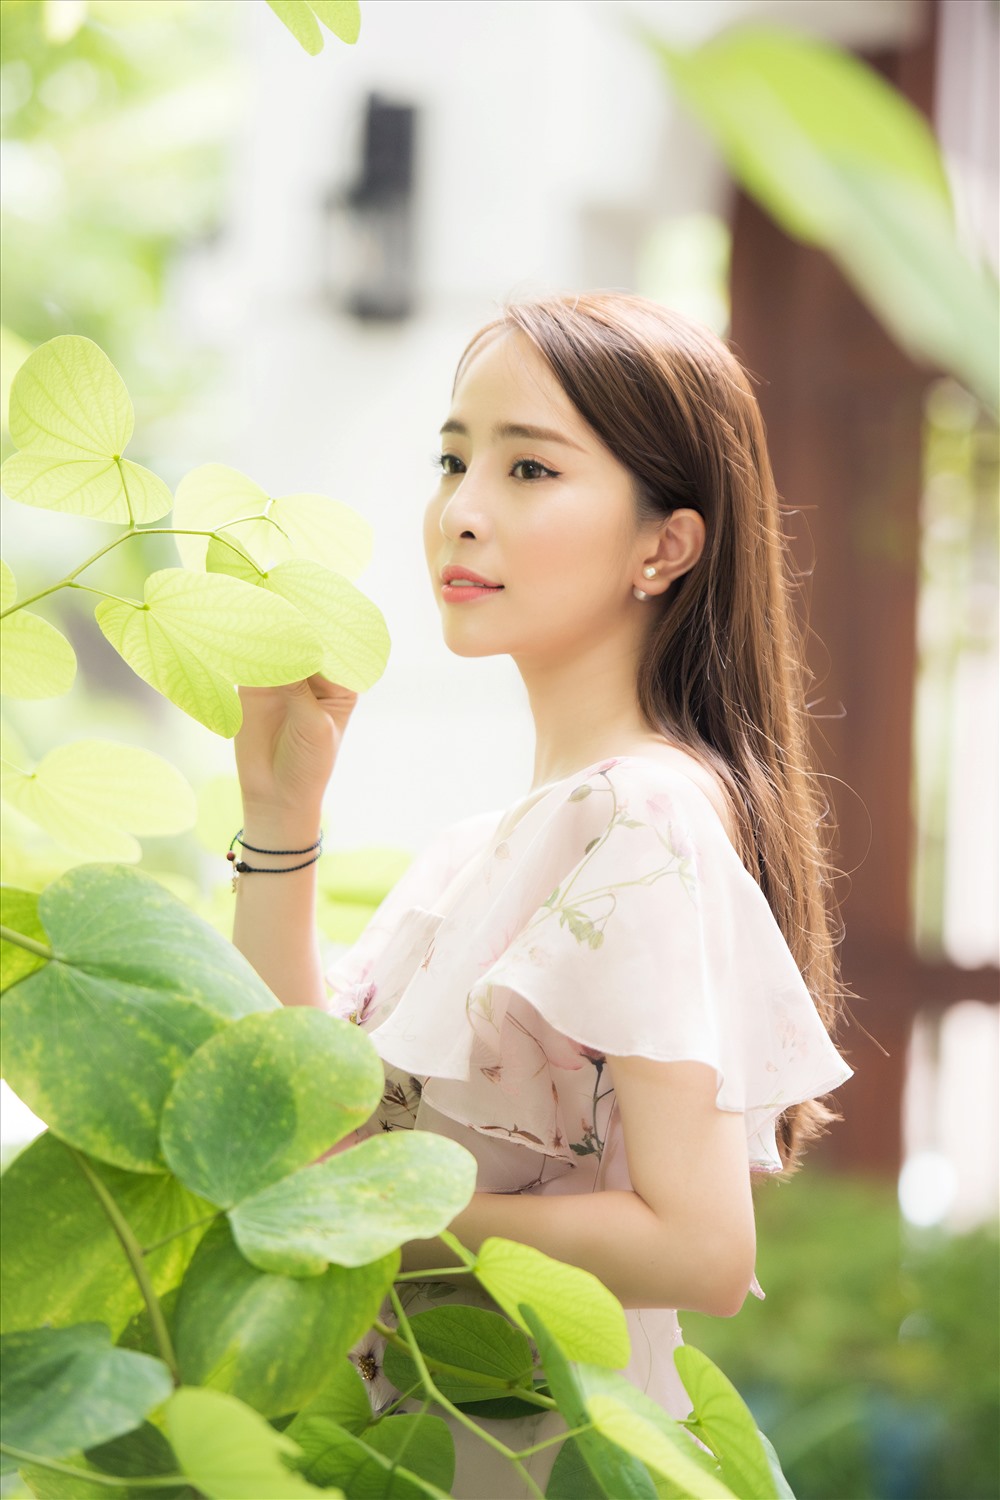 Quỳnh Nga diện chiếc váy tone hồng nhã nhặn cùng họa tiết hoa nhẹ nhàng. Ảnh: Thiên Hùng Nguyễn Việt